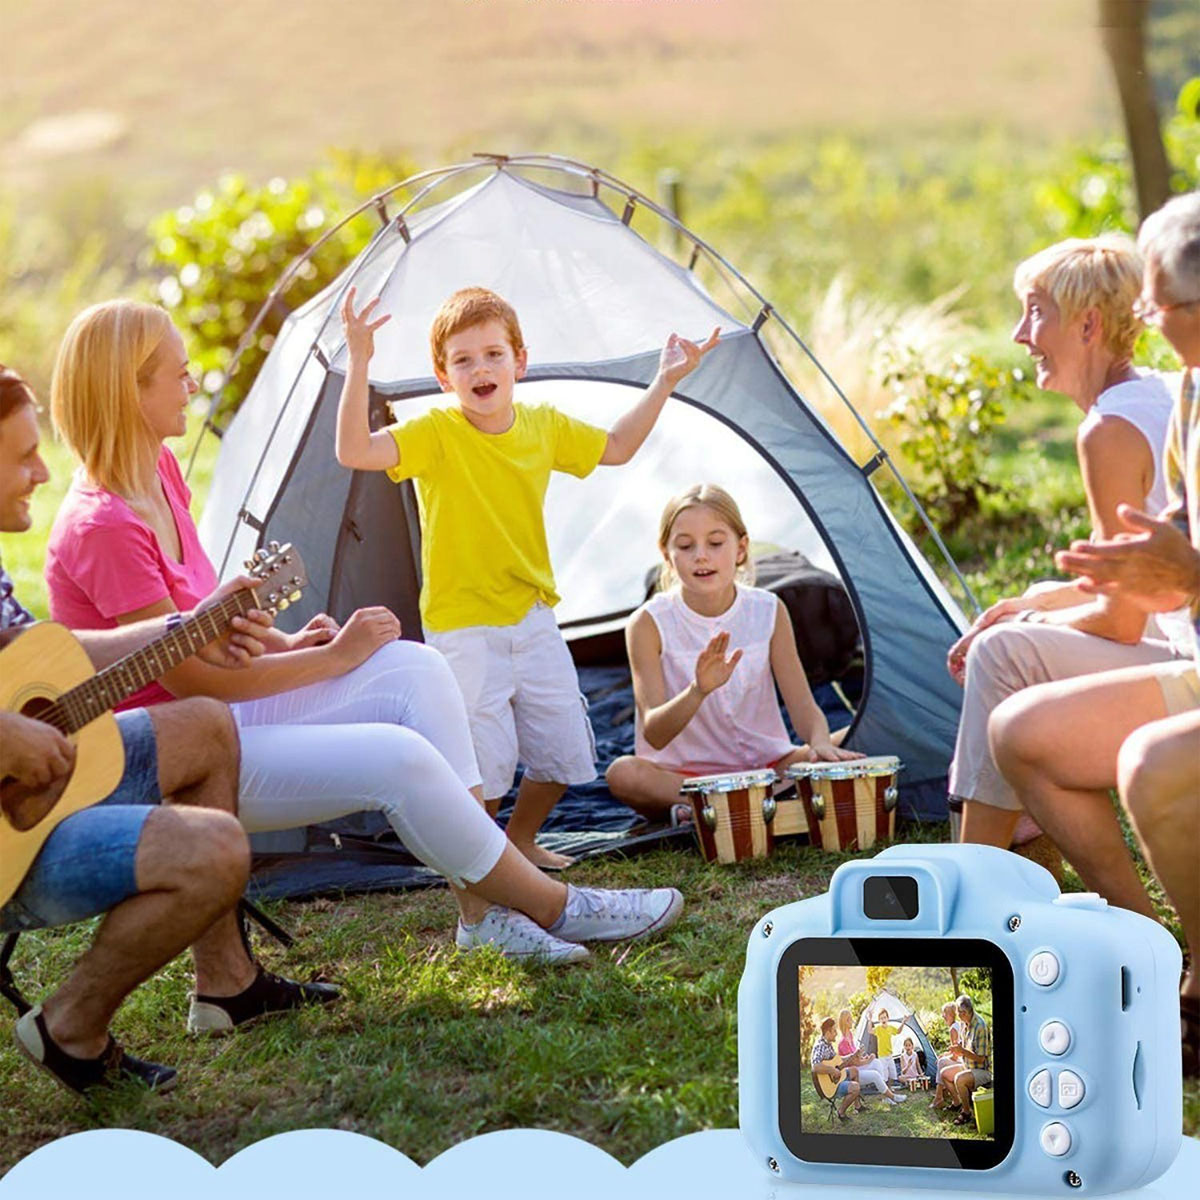 KINSI Kinder Kamera,Spielzeug-Kamera, LCD Kinderkamera Megapixel, Kinderkamera, 20 32GB Blaue